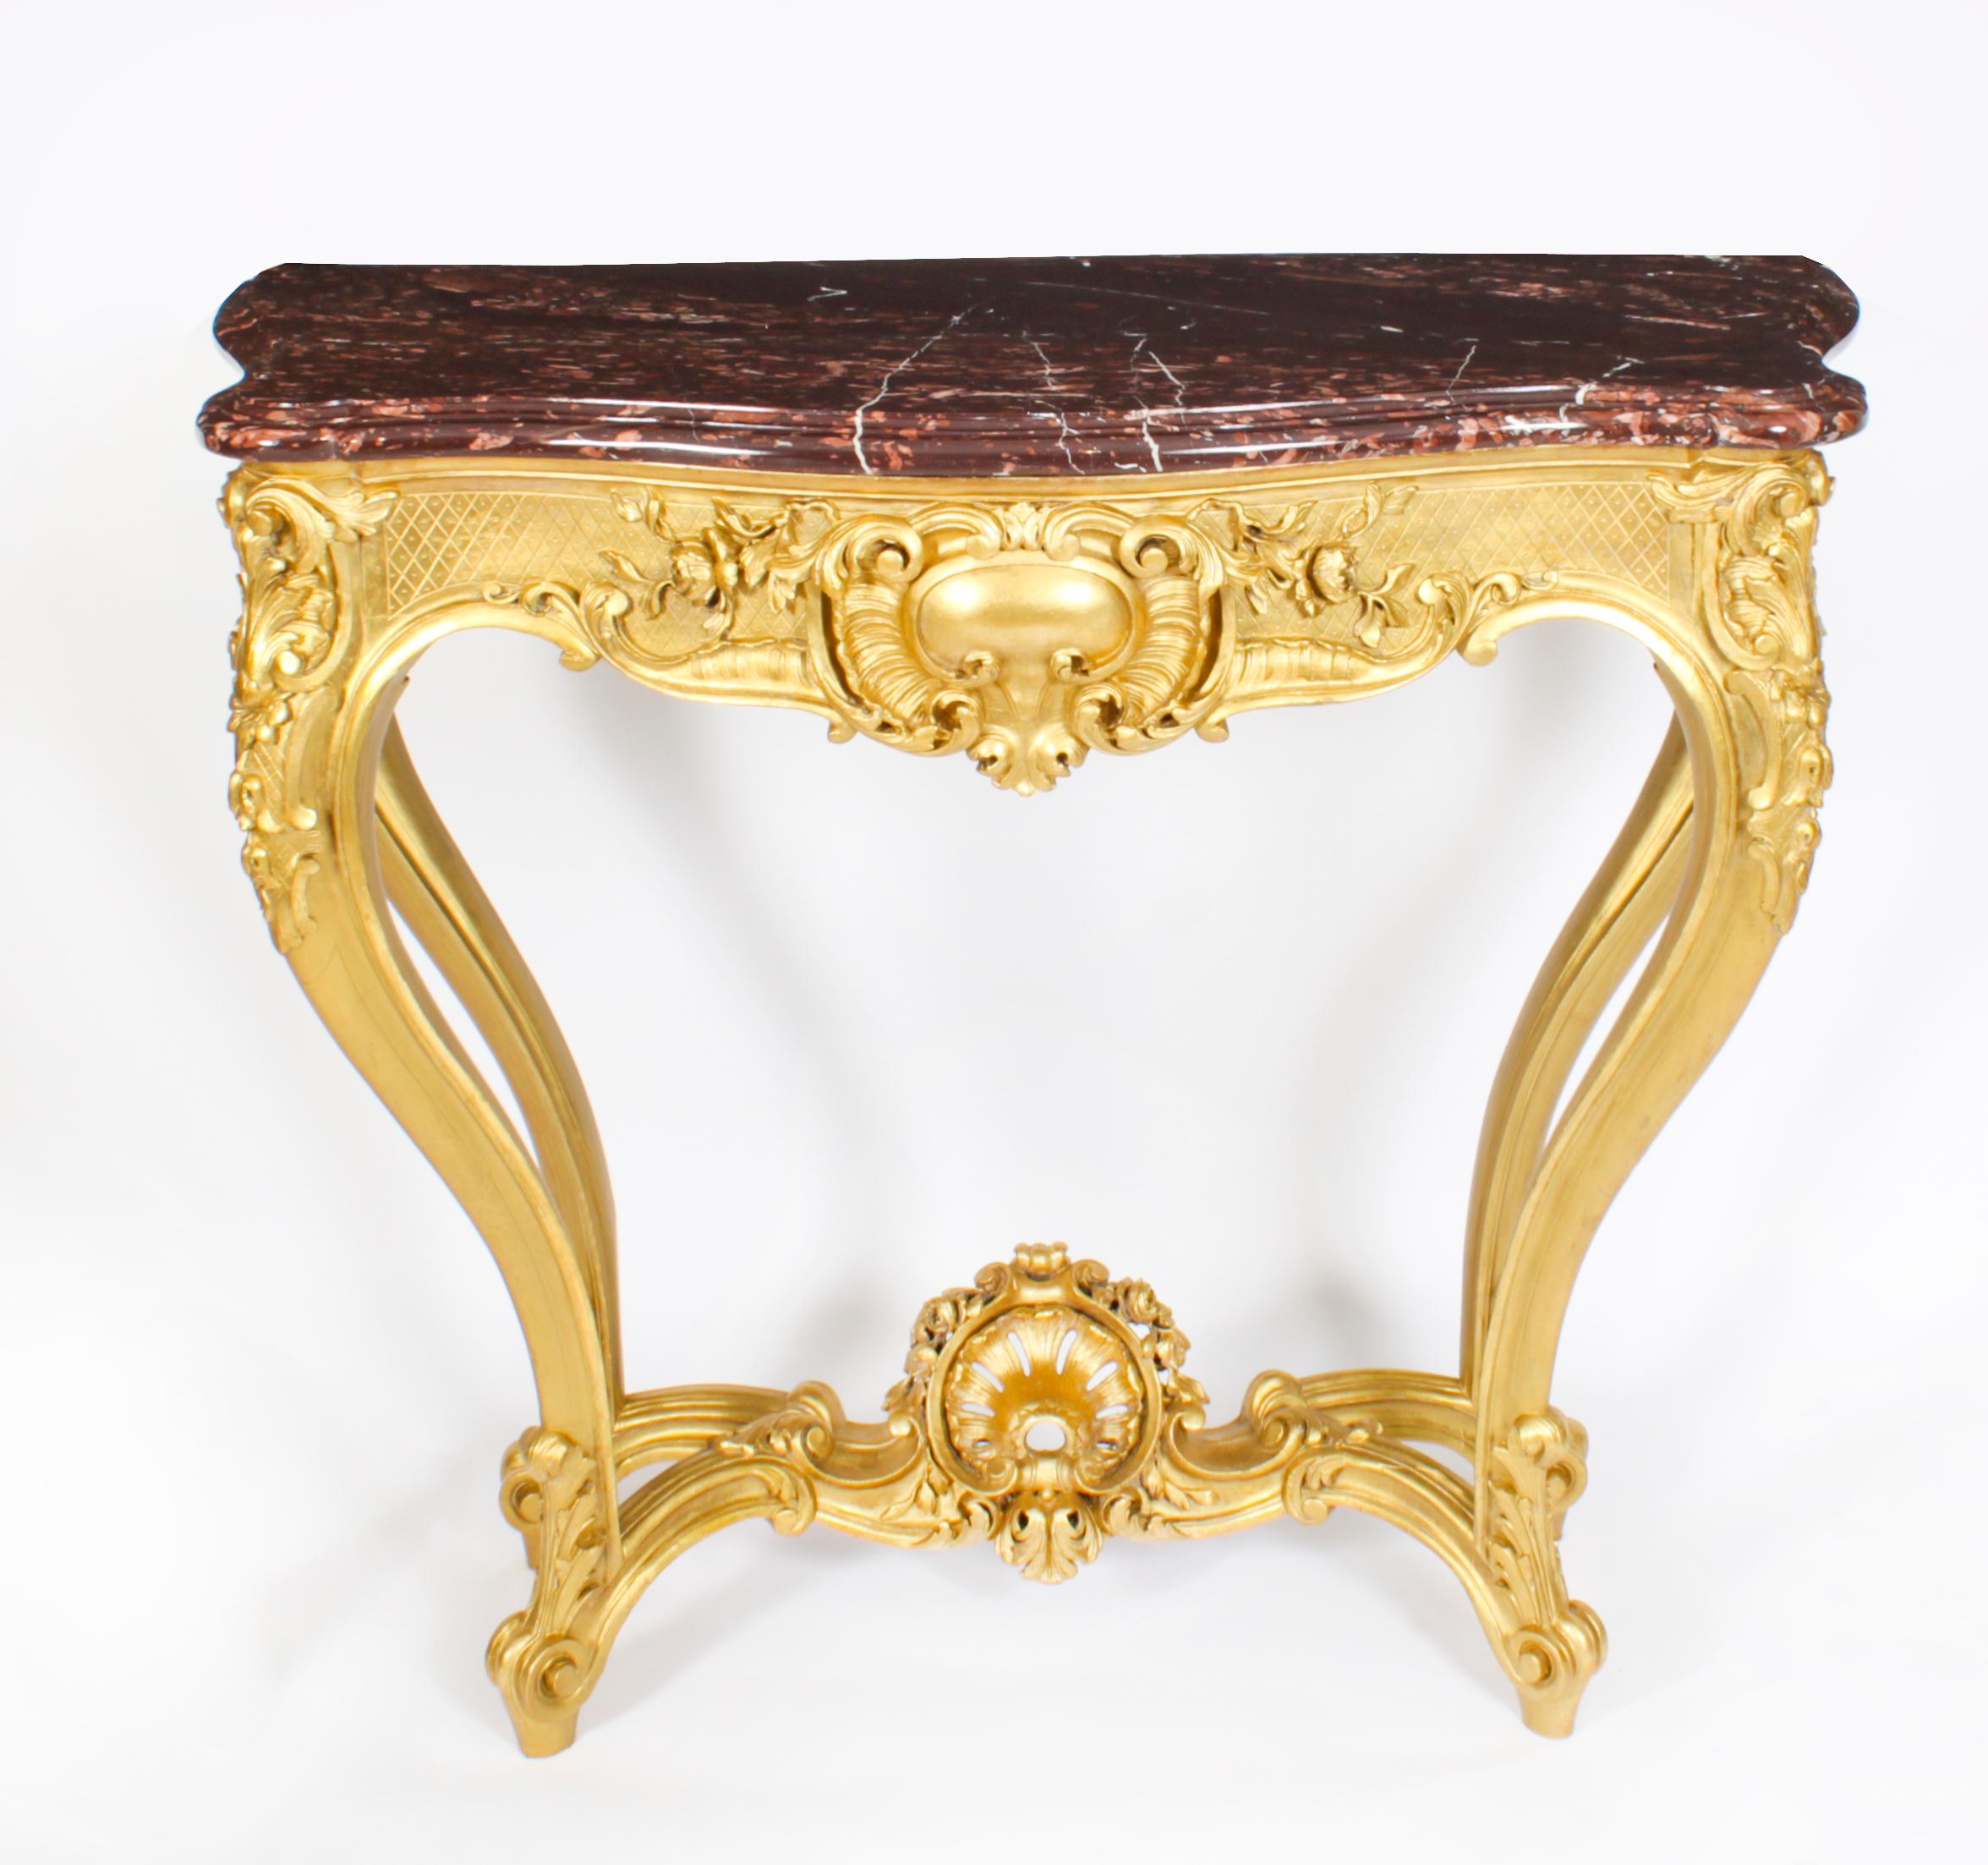 Console ancienne en bois doré sculpté de style Louis XV, datant d'environ 1830.
 
Cette table console en bois doré finement sculpté est surmontée d'un exquis plateau rectangulaire en marbre Vielle Brun au-dessus d'une frise sculptée d'un